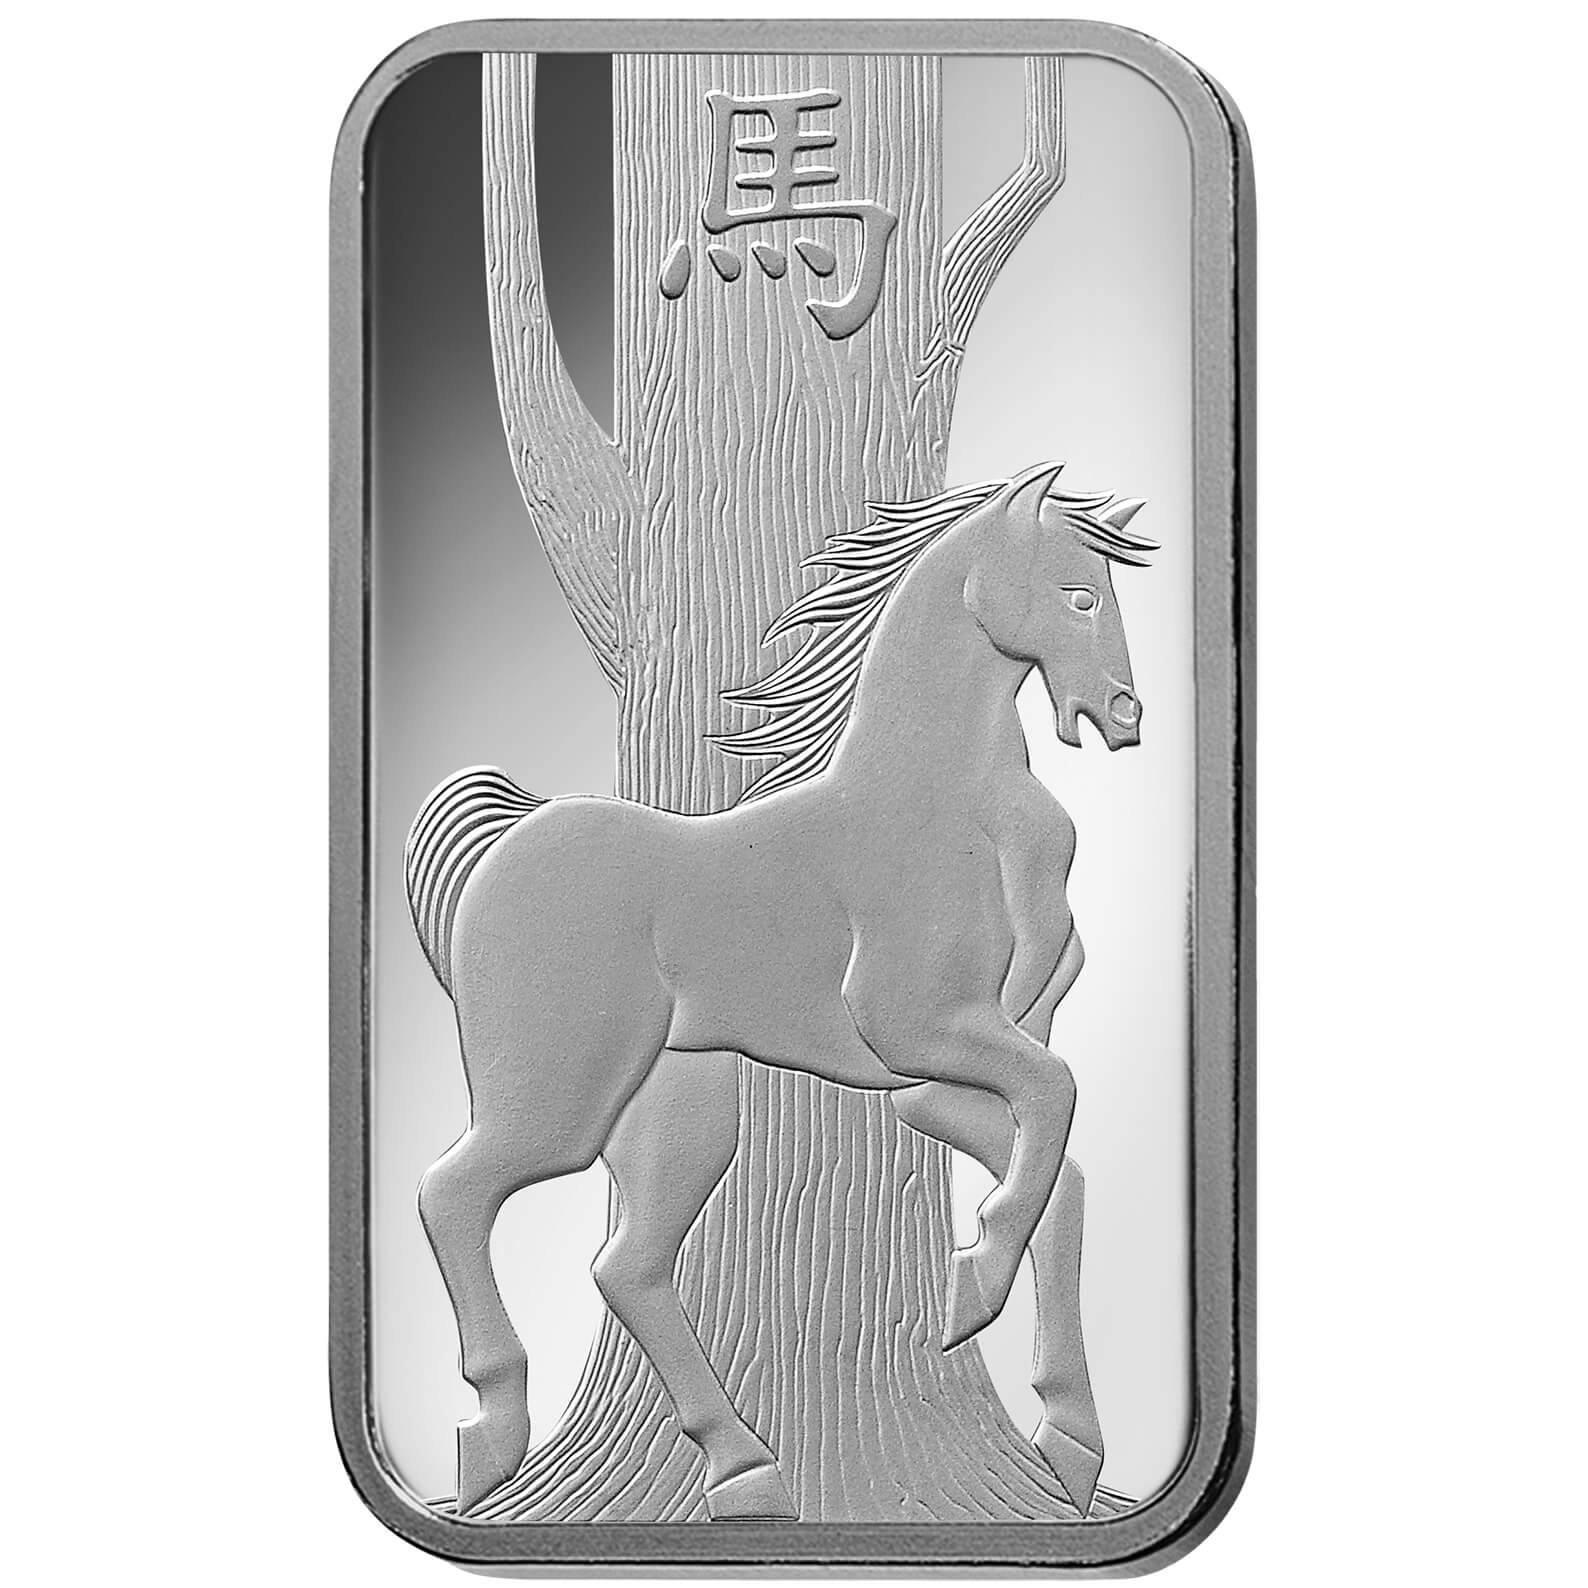 Comprare 10 grammi lingottino d'argento puro 999.9 - PAMP Svizzera Lunar Cavallo Front